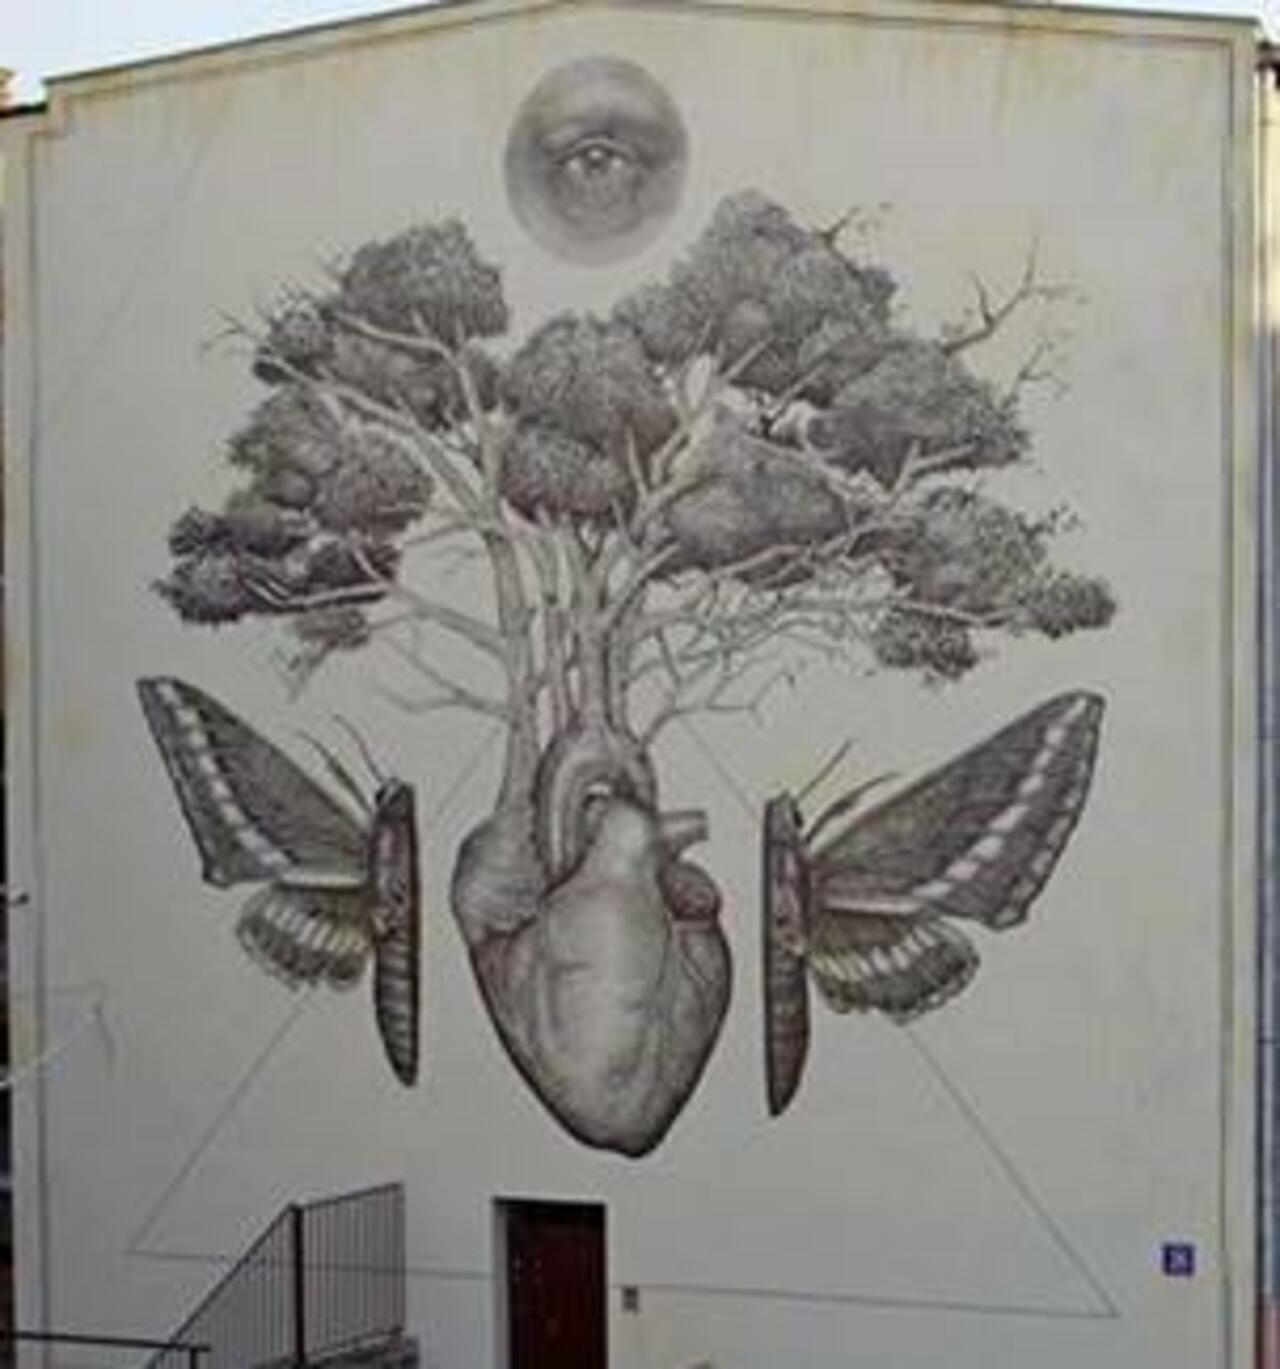 RT @DavidBonnand: ... #Lodz #Pologne
by #AlexisDiaz ()
#streetart #graffiti #art http://t.co/f6y9E74l6l